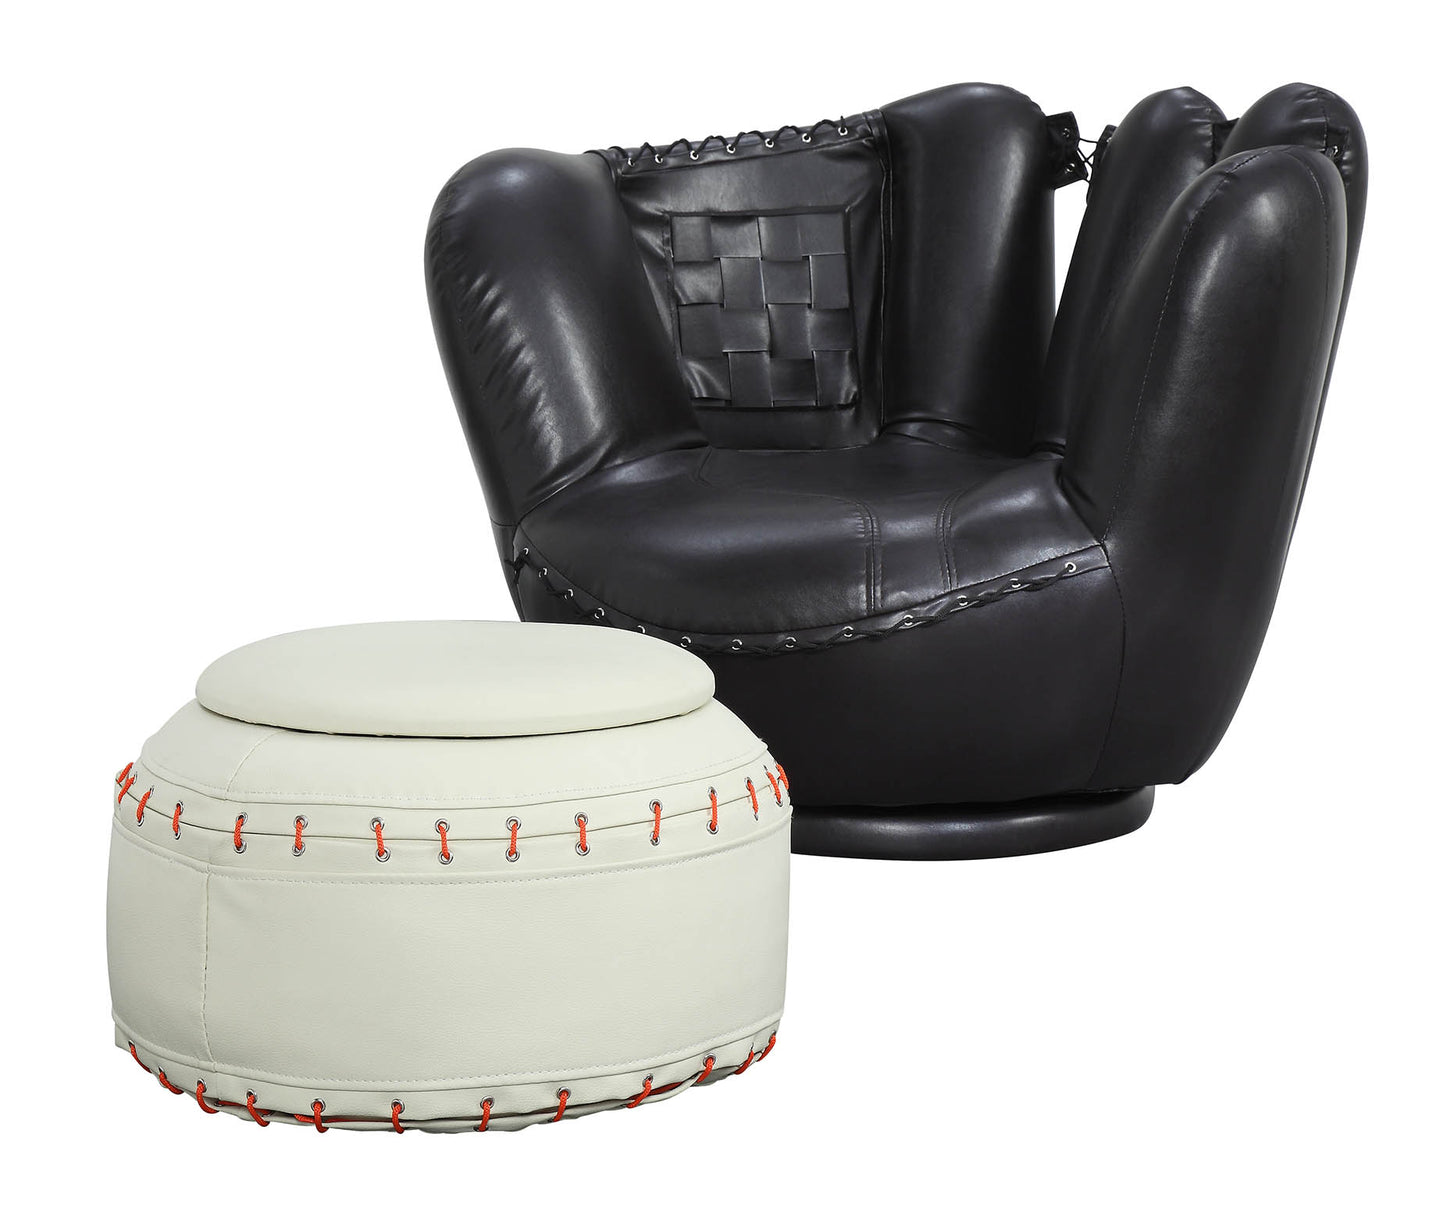 All Star Baseball: Black Glove Chair, White Ottoman Chair & Ottoman (2Pc Pk)